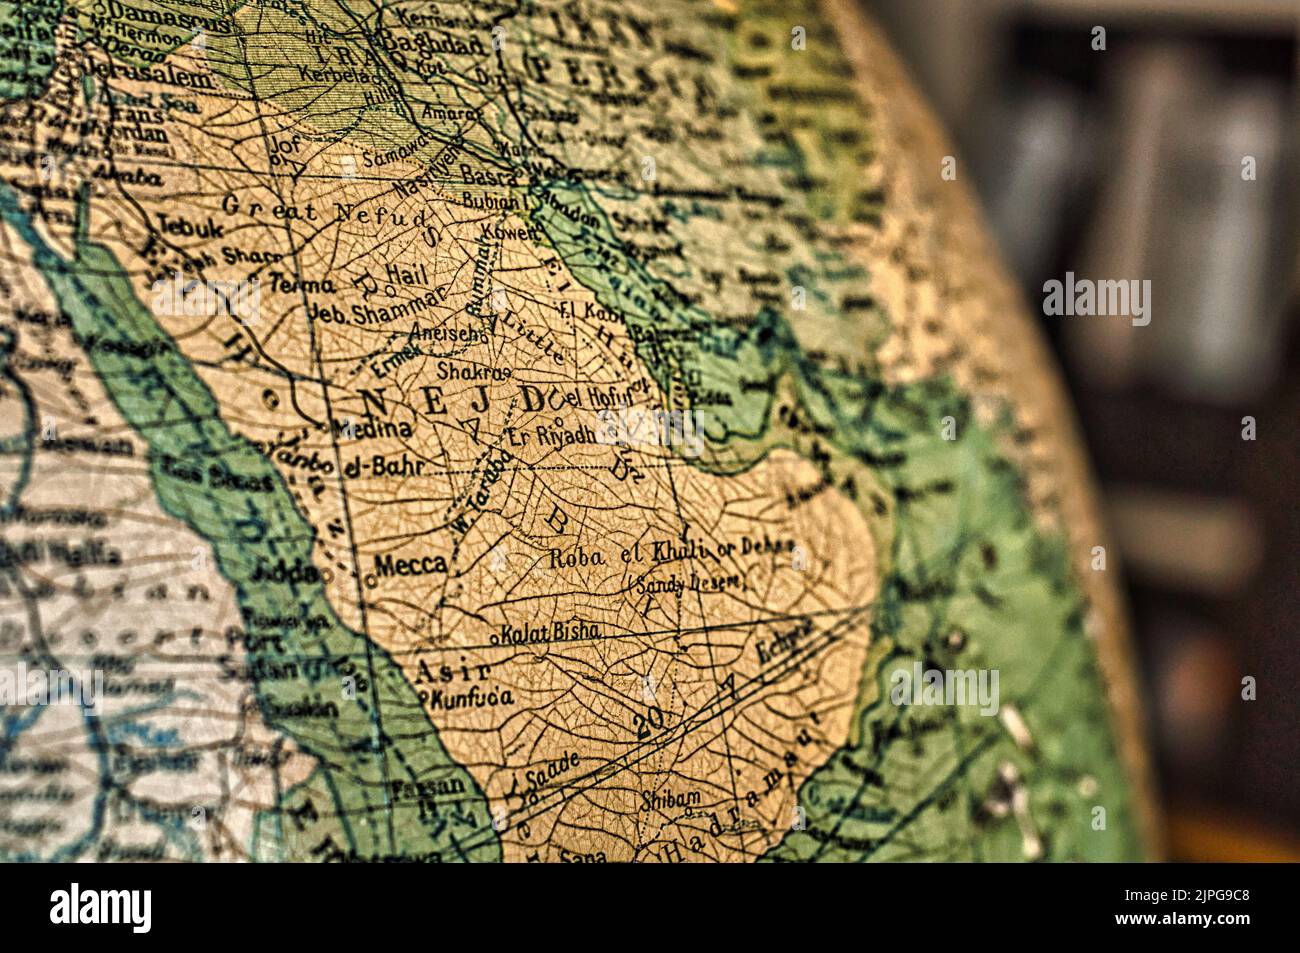 Une carte de l'Arabie Saoudite / Nejd capturée sur un globe antique Banque D'Images